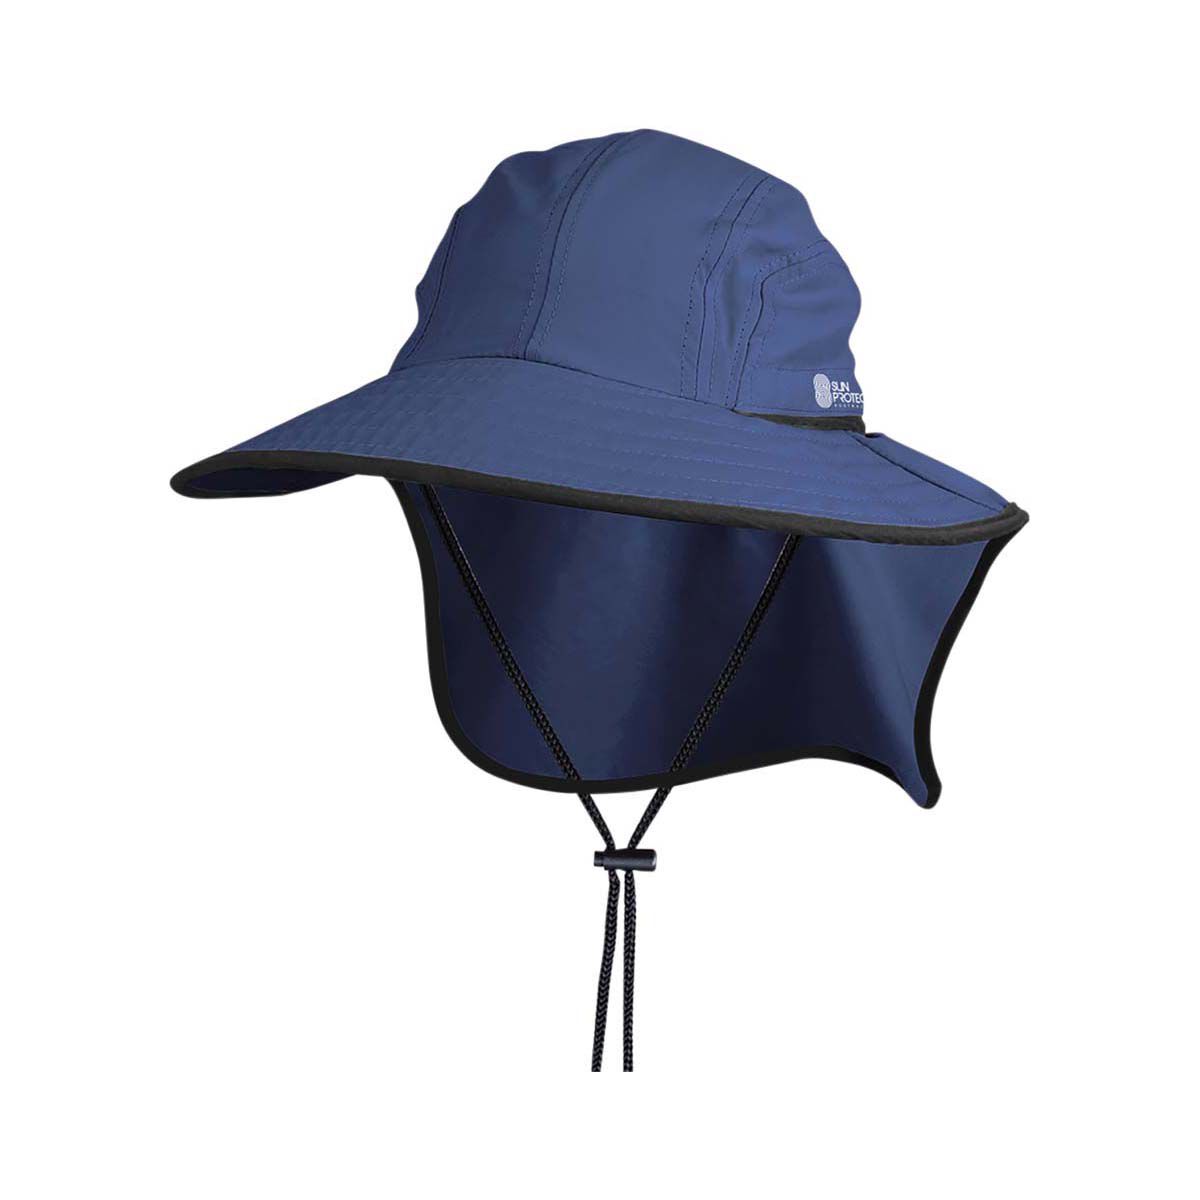 Bucket Hat - Blue Shark Camo, Reversible Hat, Cotton Hat, Fishing Hat, Fisherman's Hat, adult Hat, Unisex, Sun Hat, Hats for Men, Childs Hat